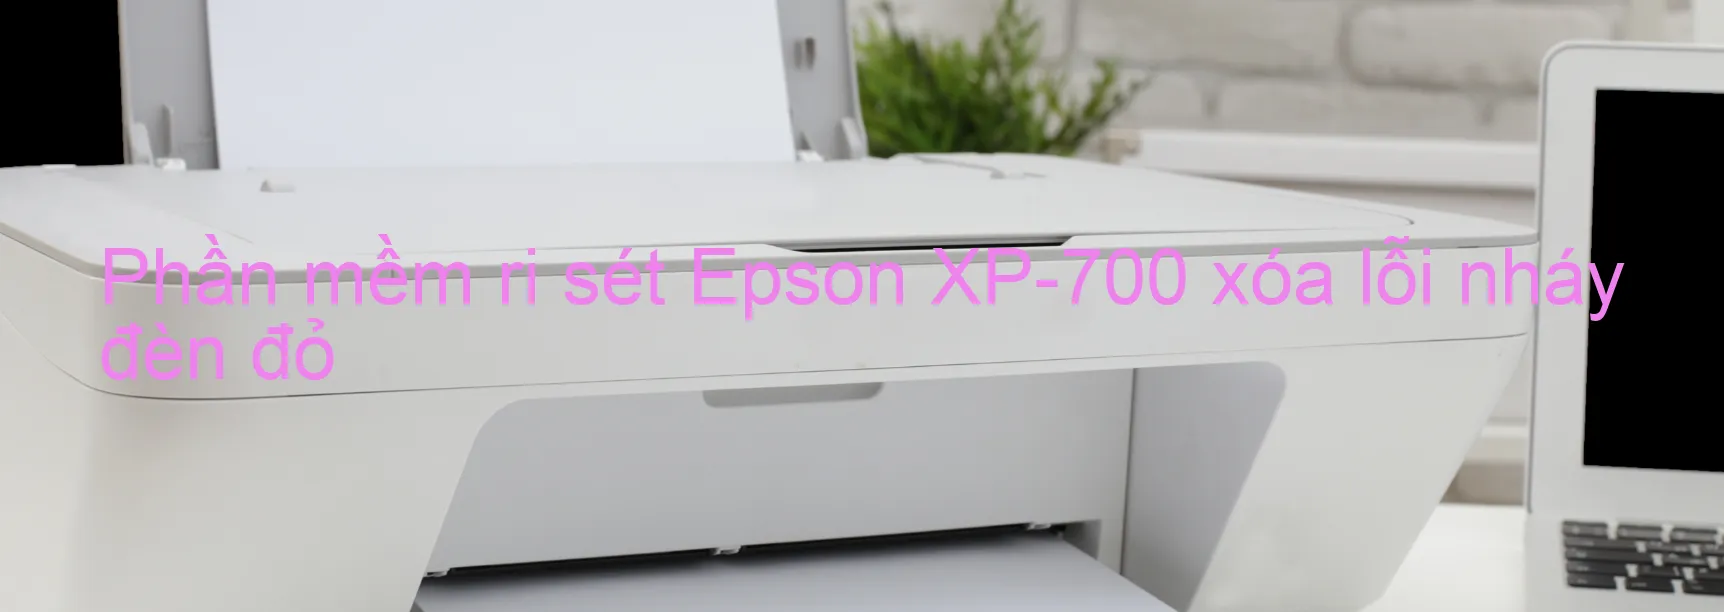 Phần mềm reset Epson XP-700 xóa lỗi nháy đèn đỏ